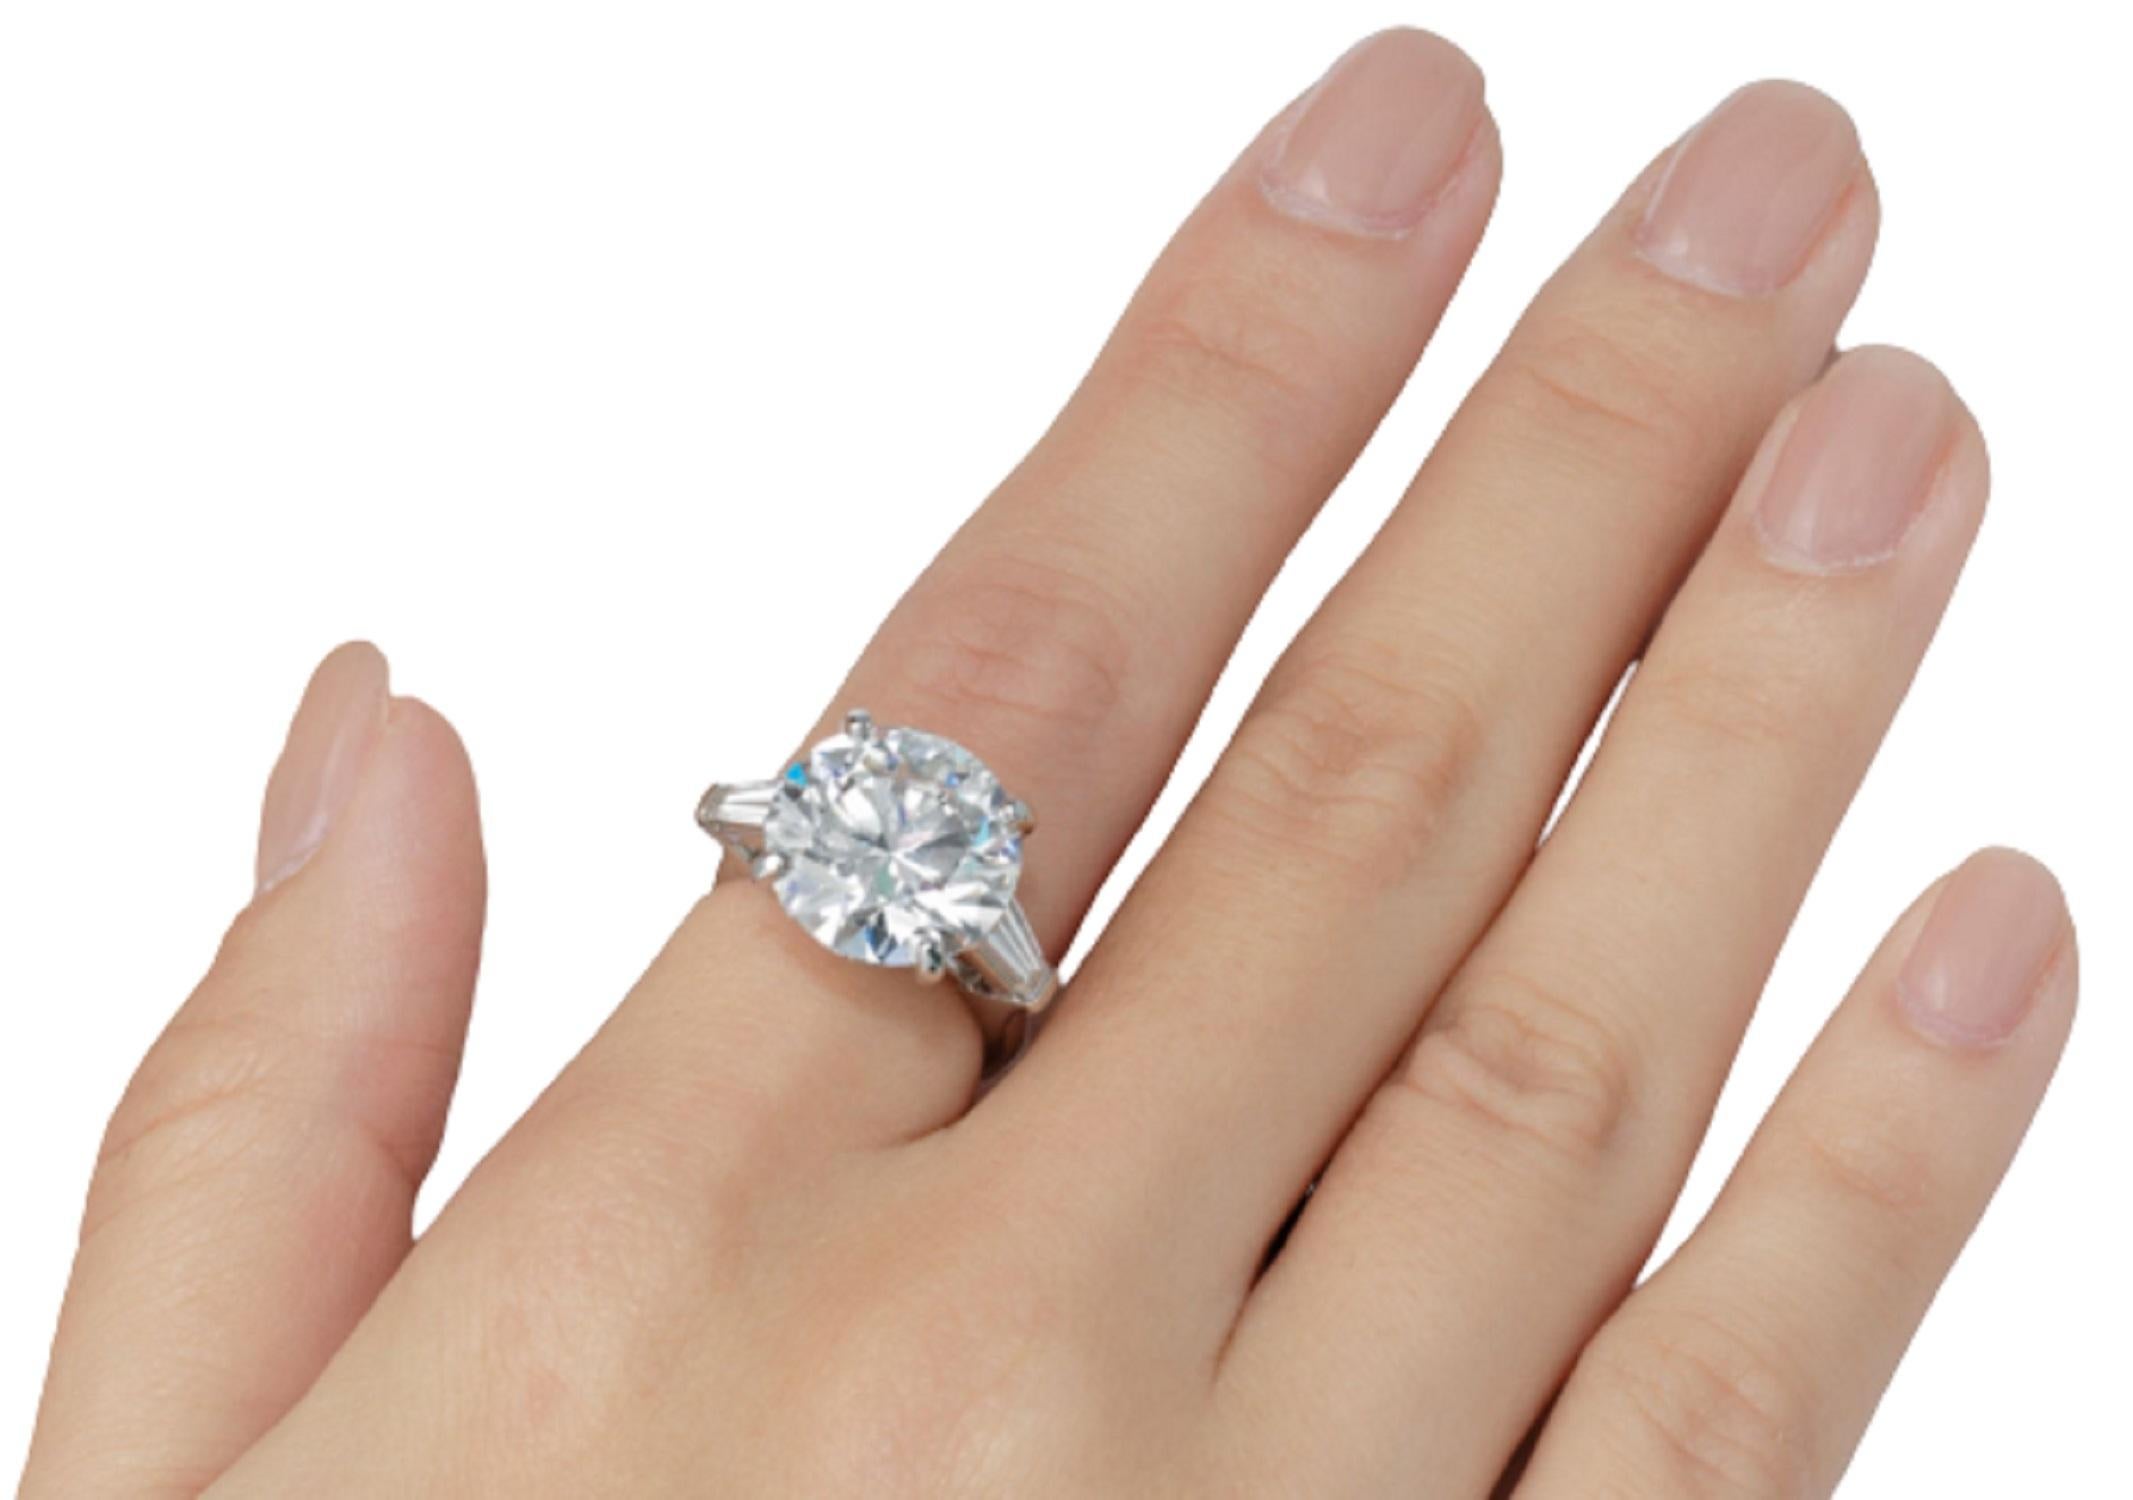  Le diamant rond de taille brillante de 4,67 carats, d'une taille impressionnante et accrocheuse, est vibrant et d'une finition impeccable ! Taillé avec des proportions absolument magnifiques, il affiche un éclat vraiment phénoménal !

Le diamant